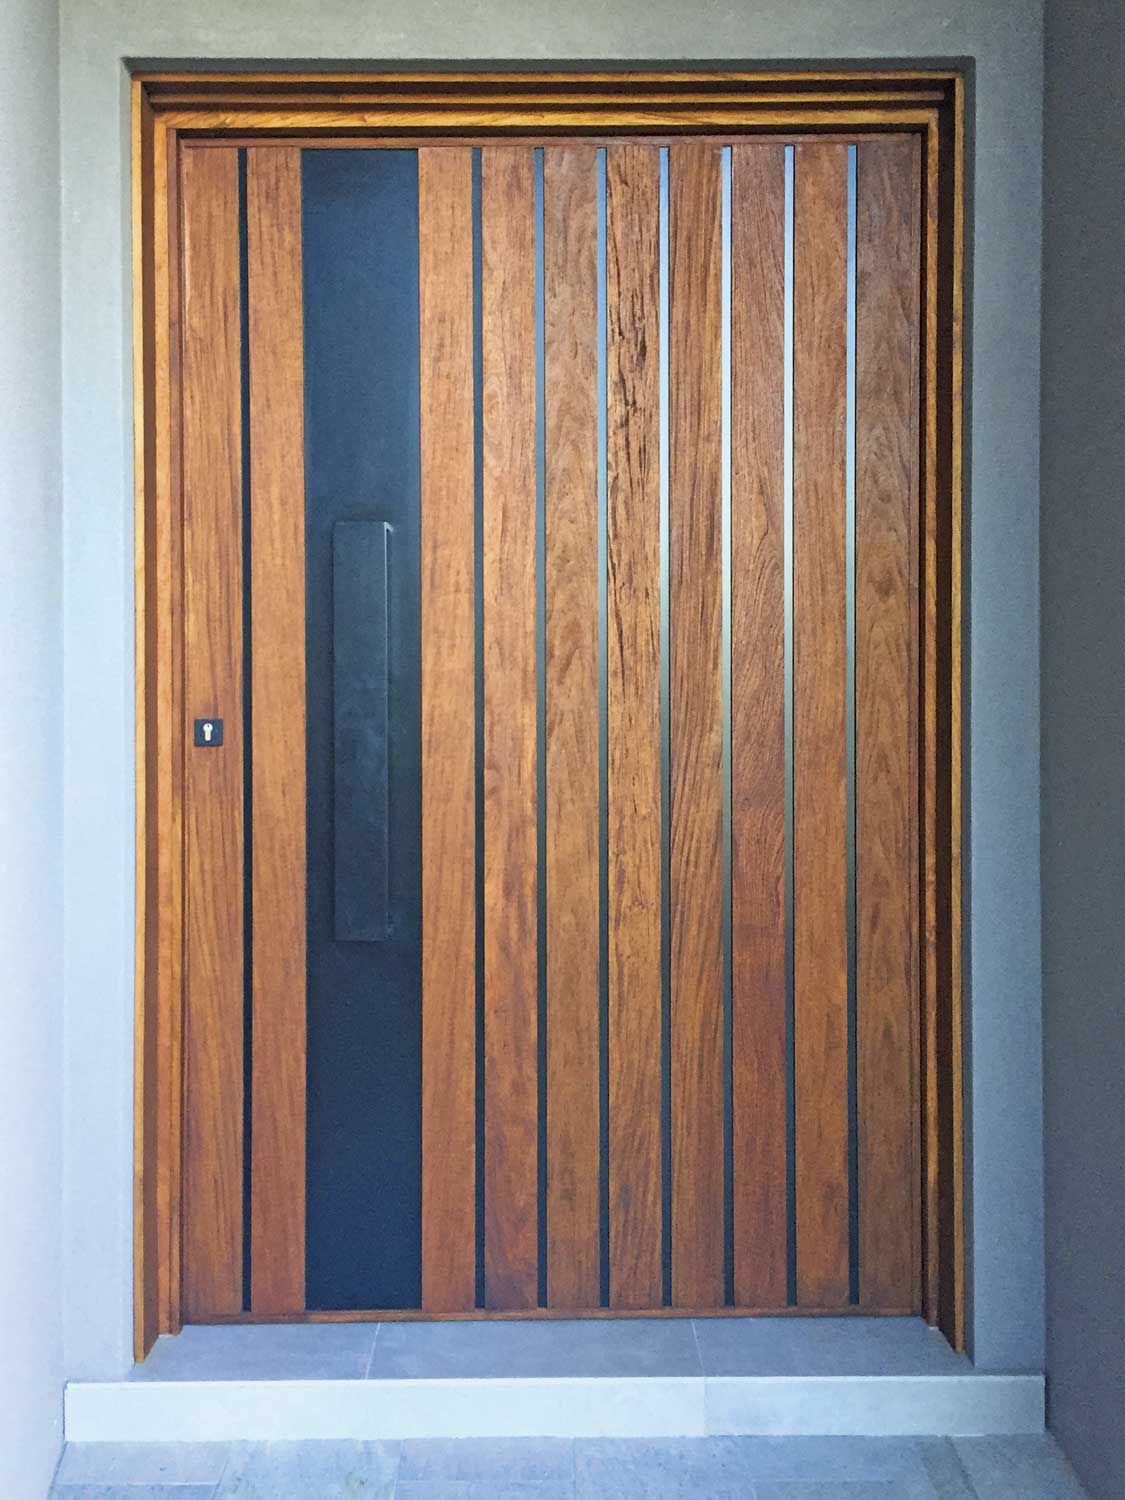 Powder coated vertical metallic strip with incorporated handle custom pivot door